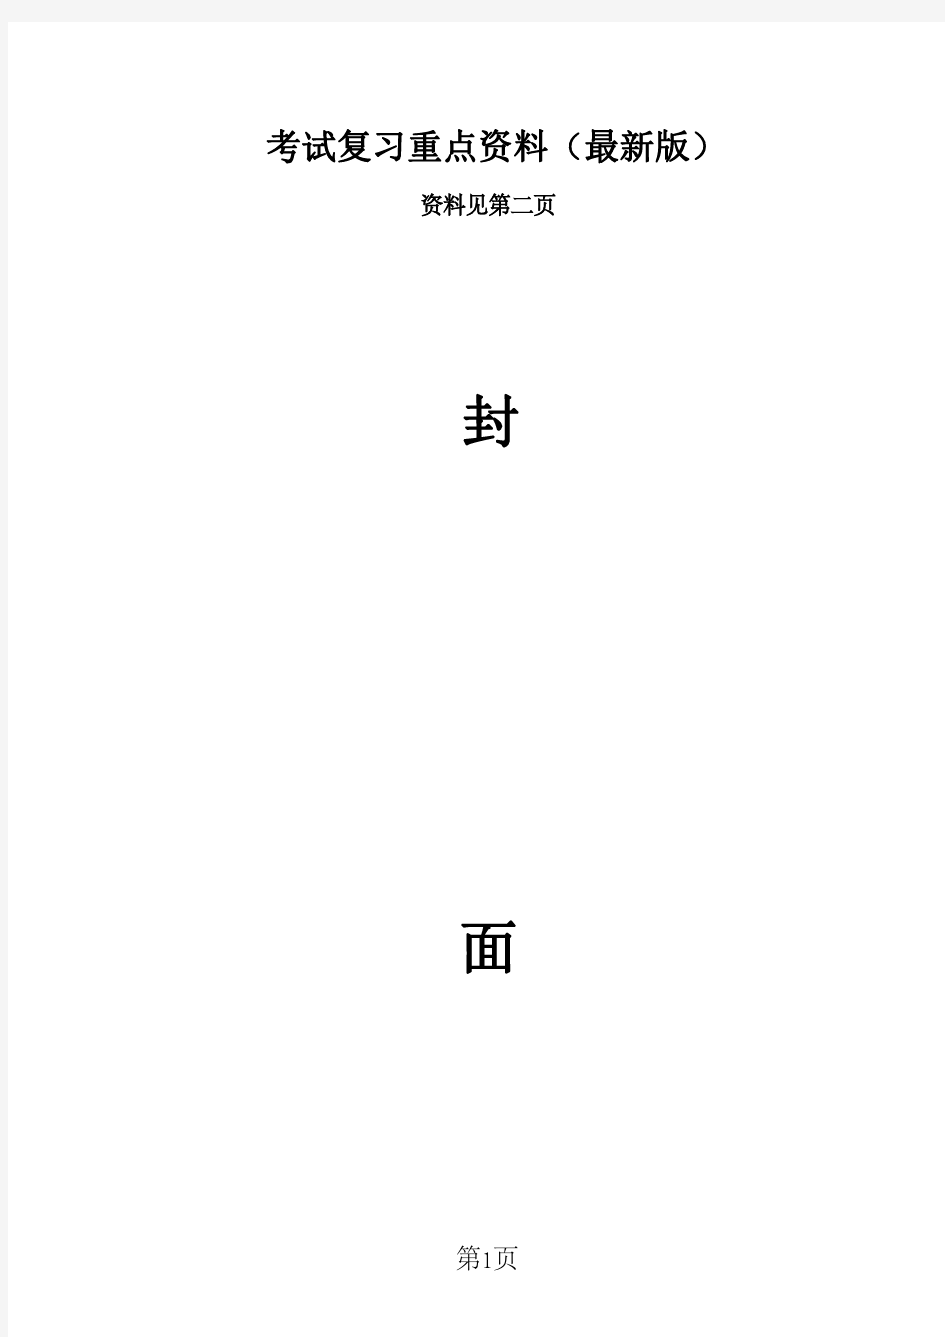 武汉大学《行政管理》考研真题汇编(2008-2014年)